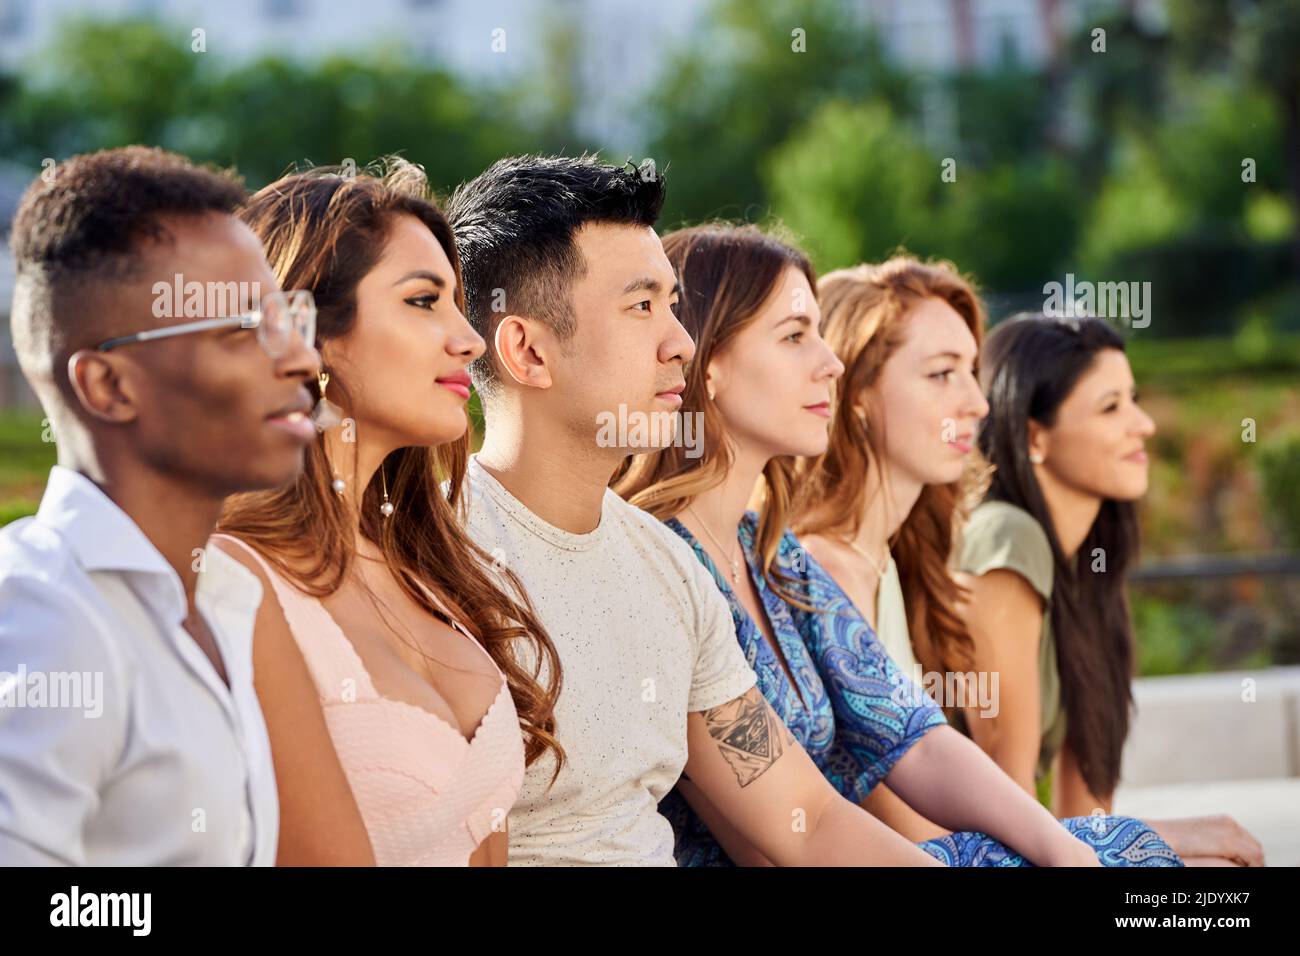 Gruppo di giovani multirazziali che guardano via mentre si siedono in fila insieme all'aperto. Concetto di squadra e unità. Foto Stock